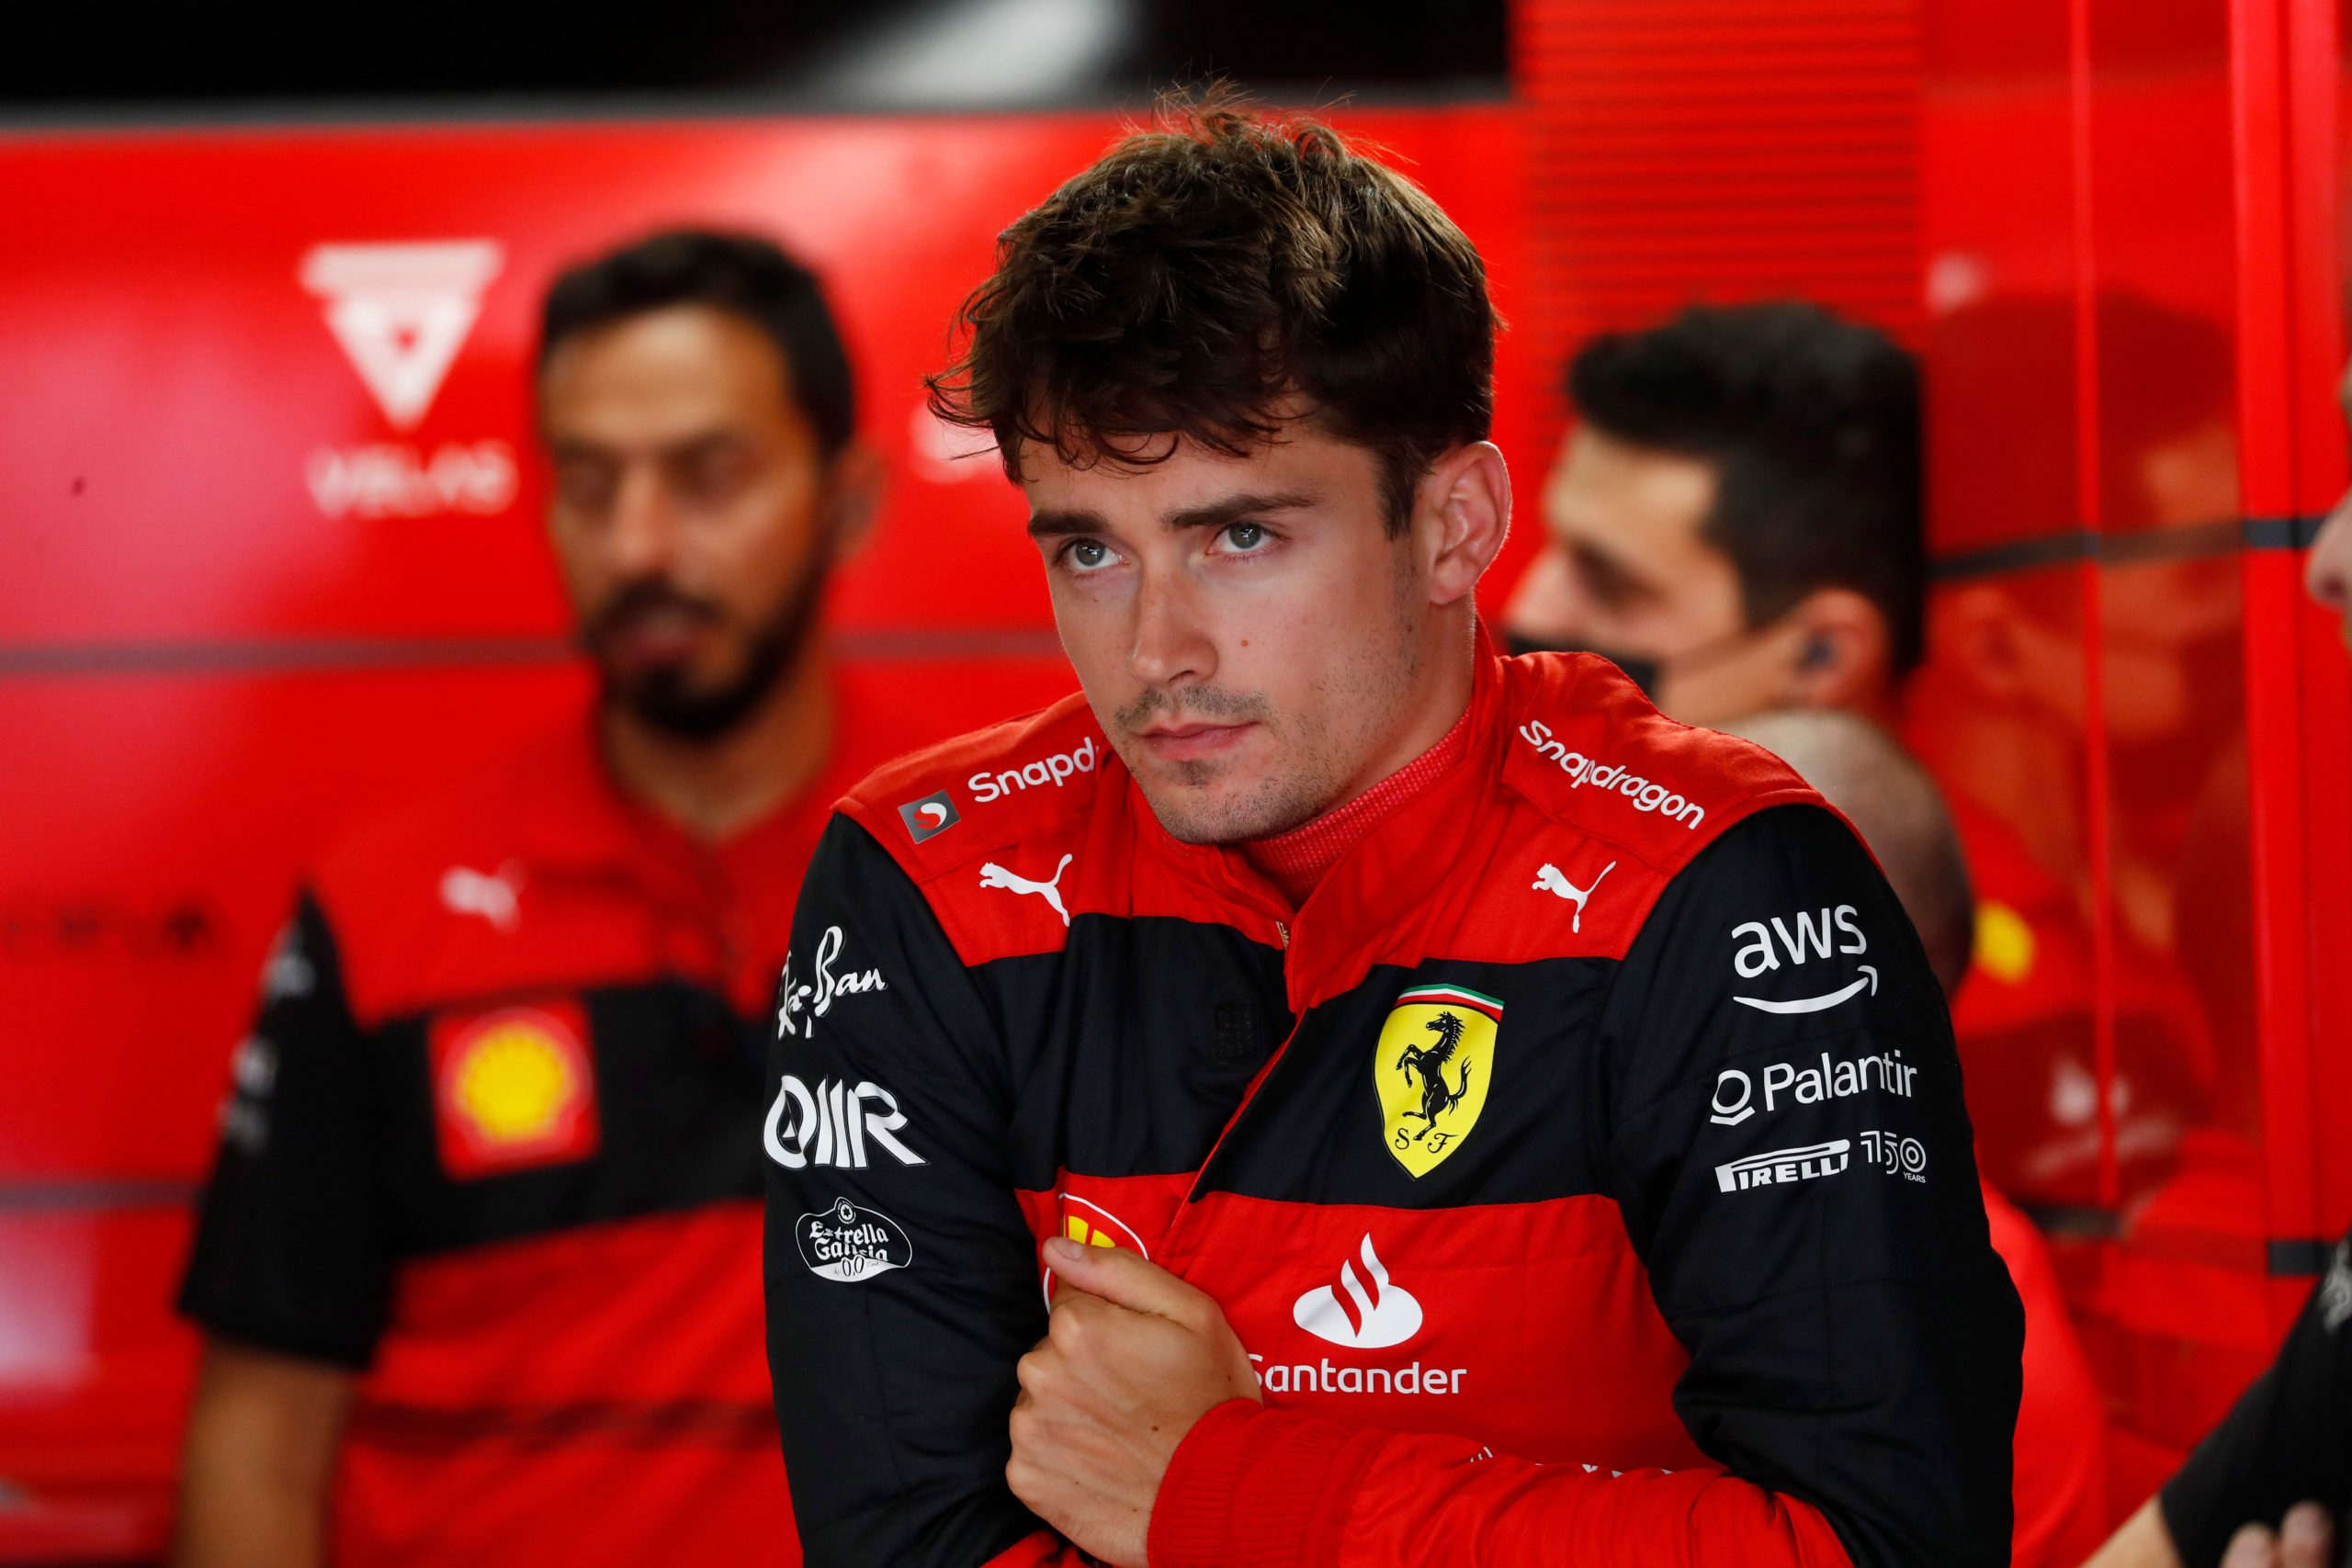 Austrian Grand Prix sees Leclerc revival, Verstappen book second place